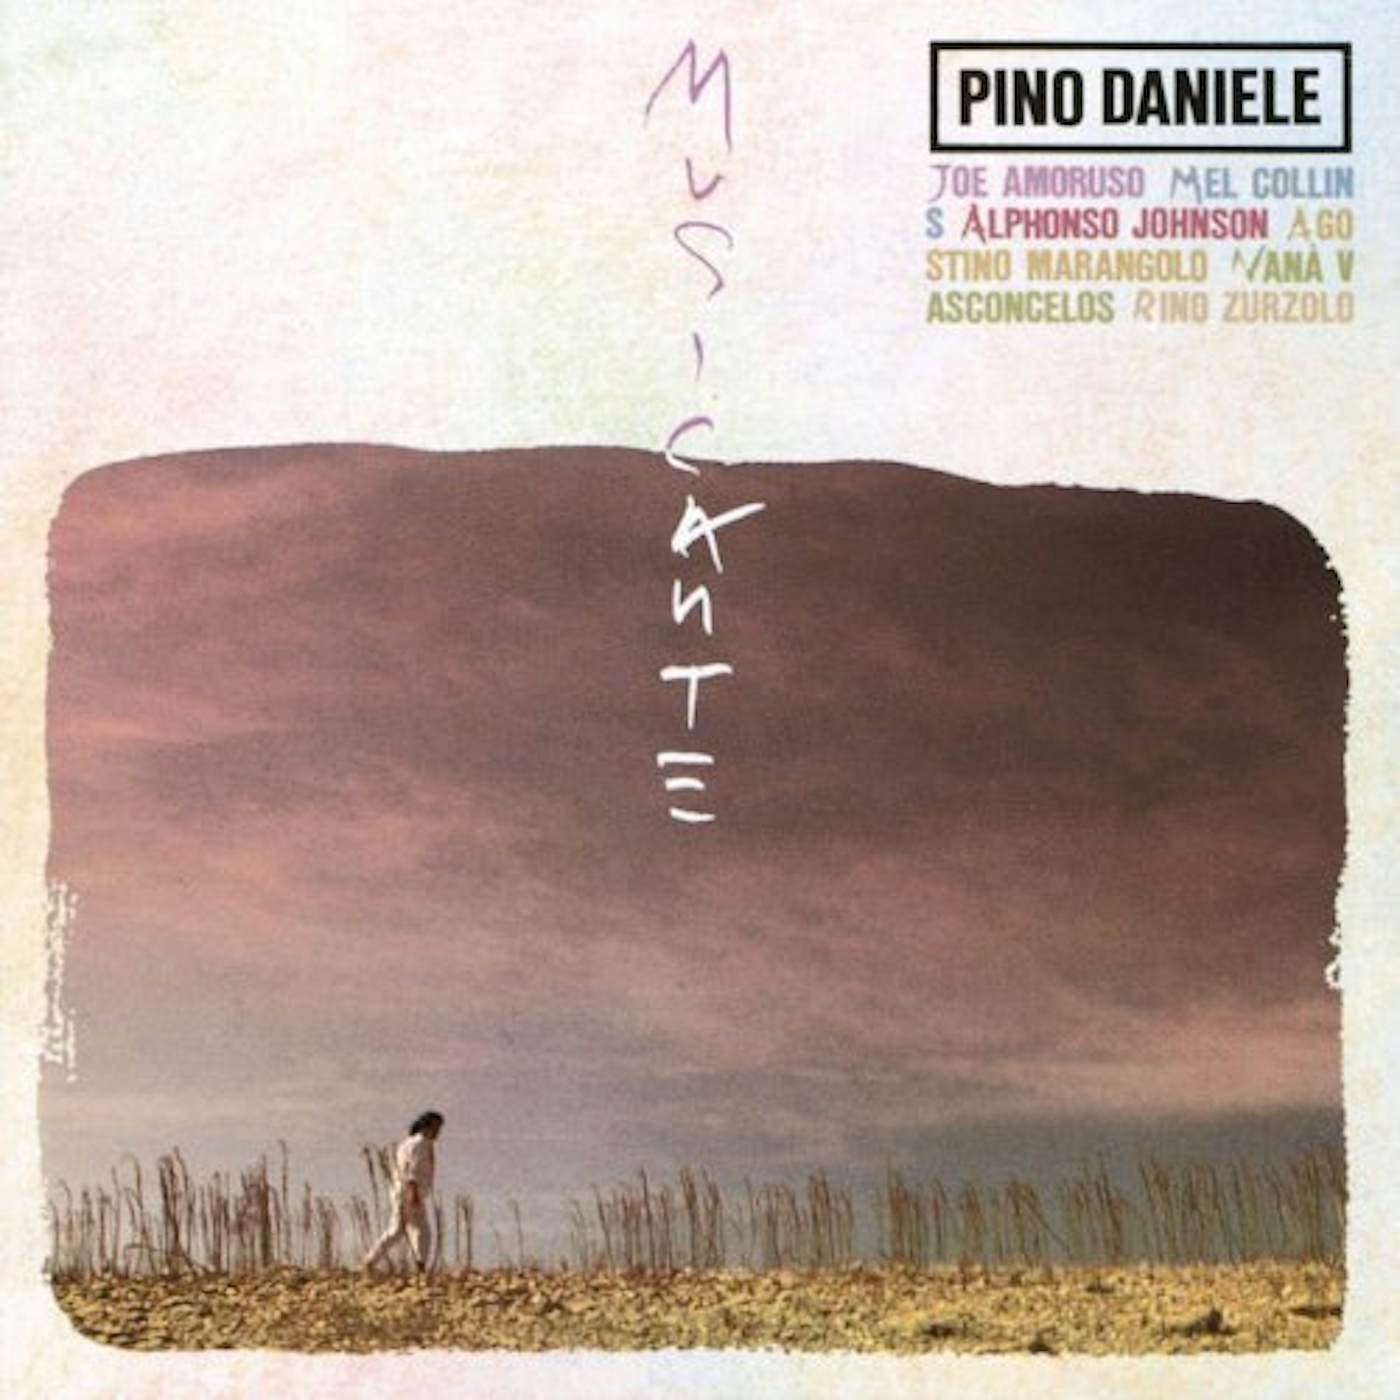 Pino Daniele Musicante Vinyl Record